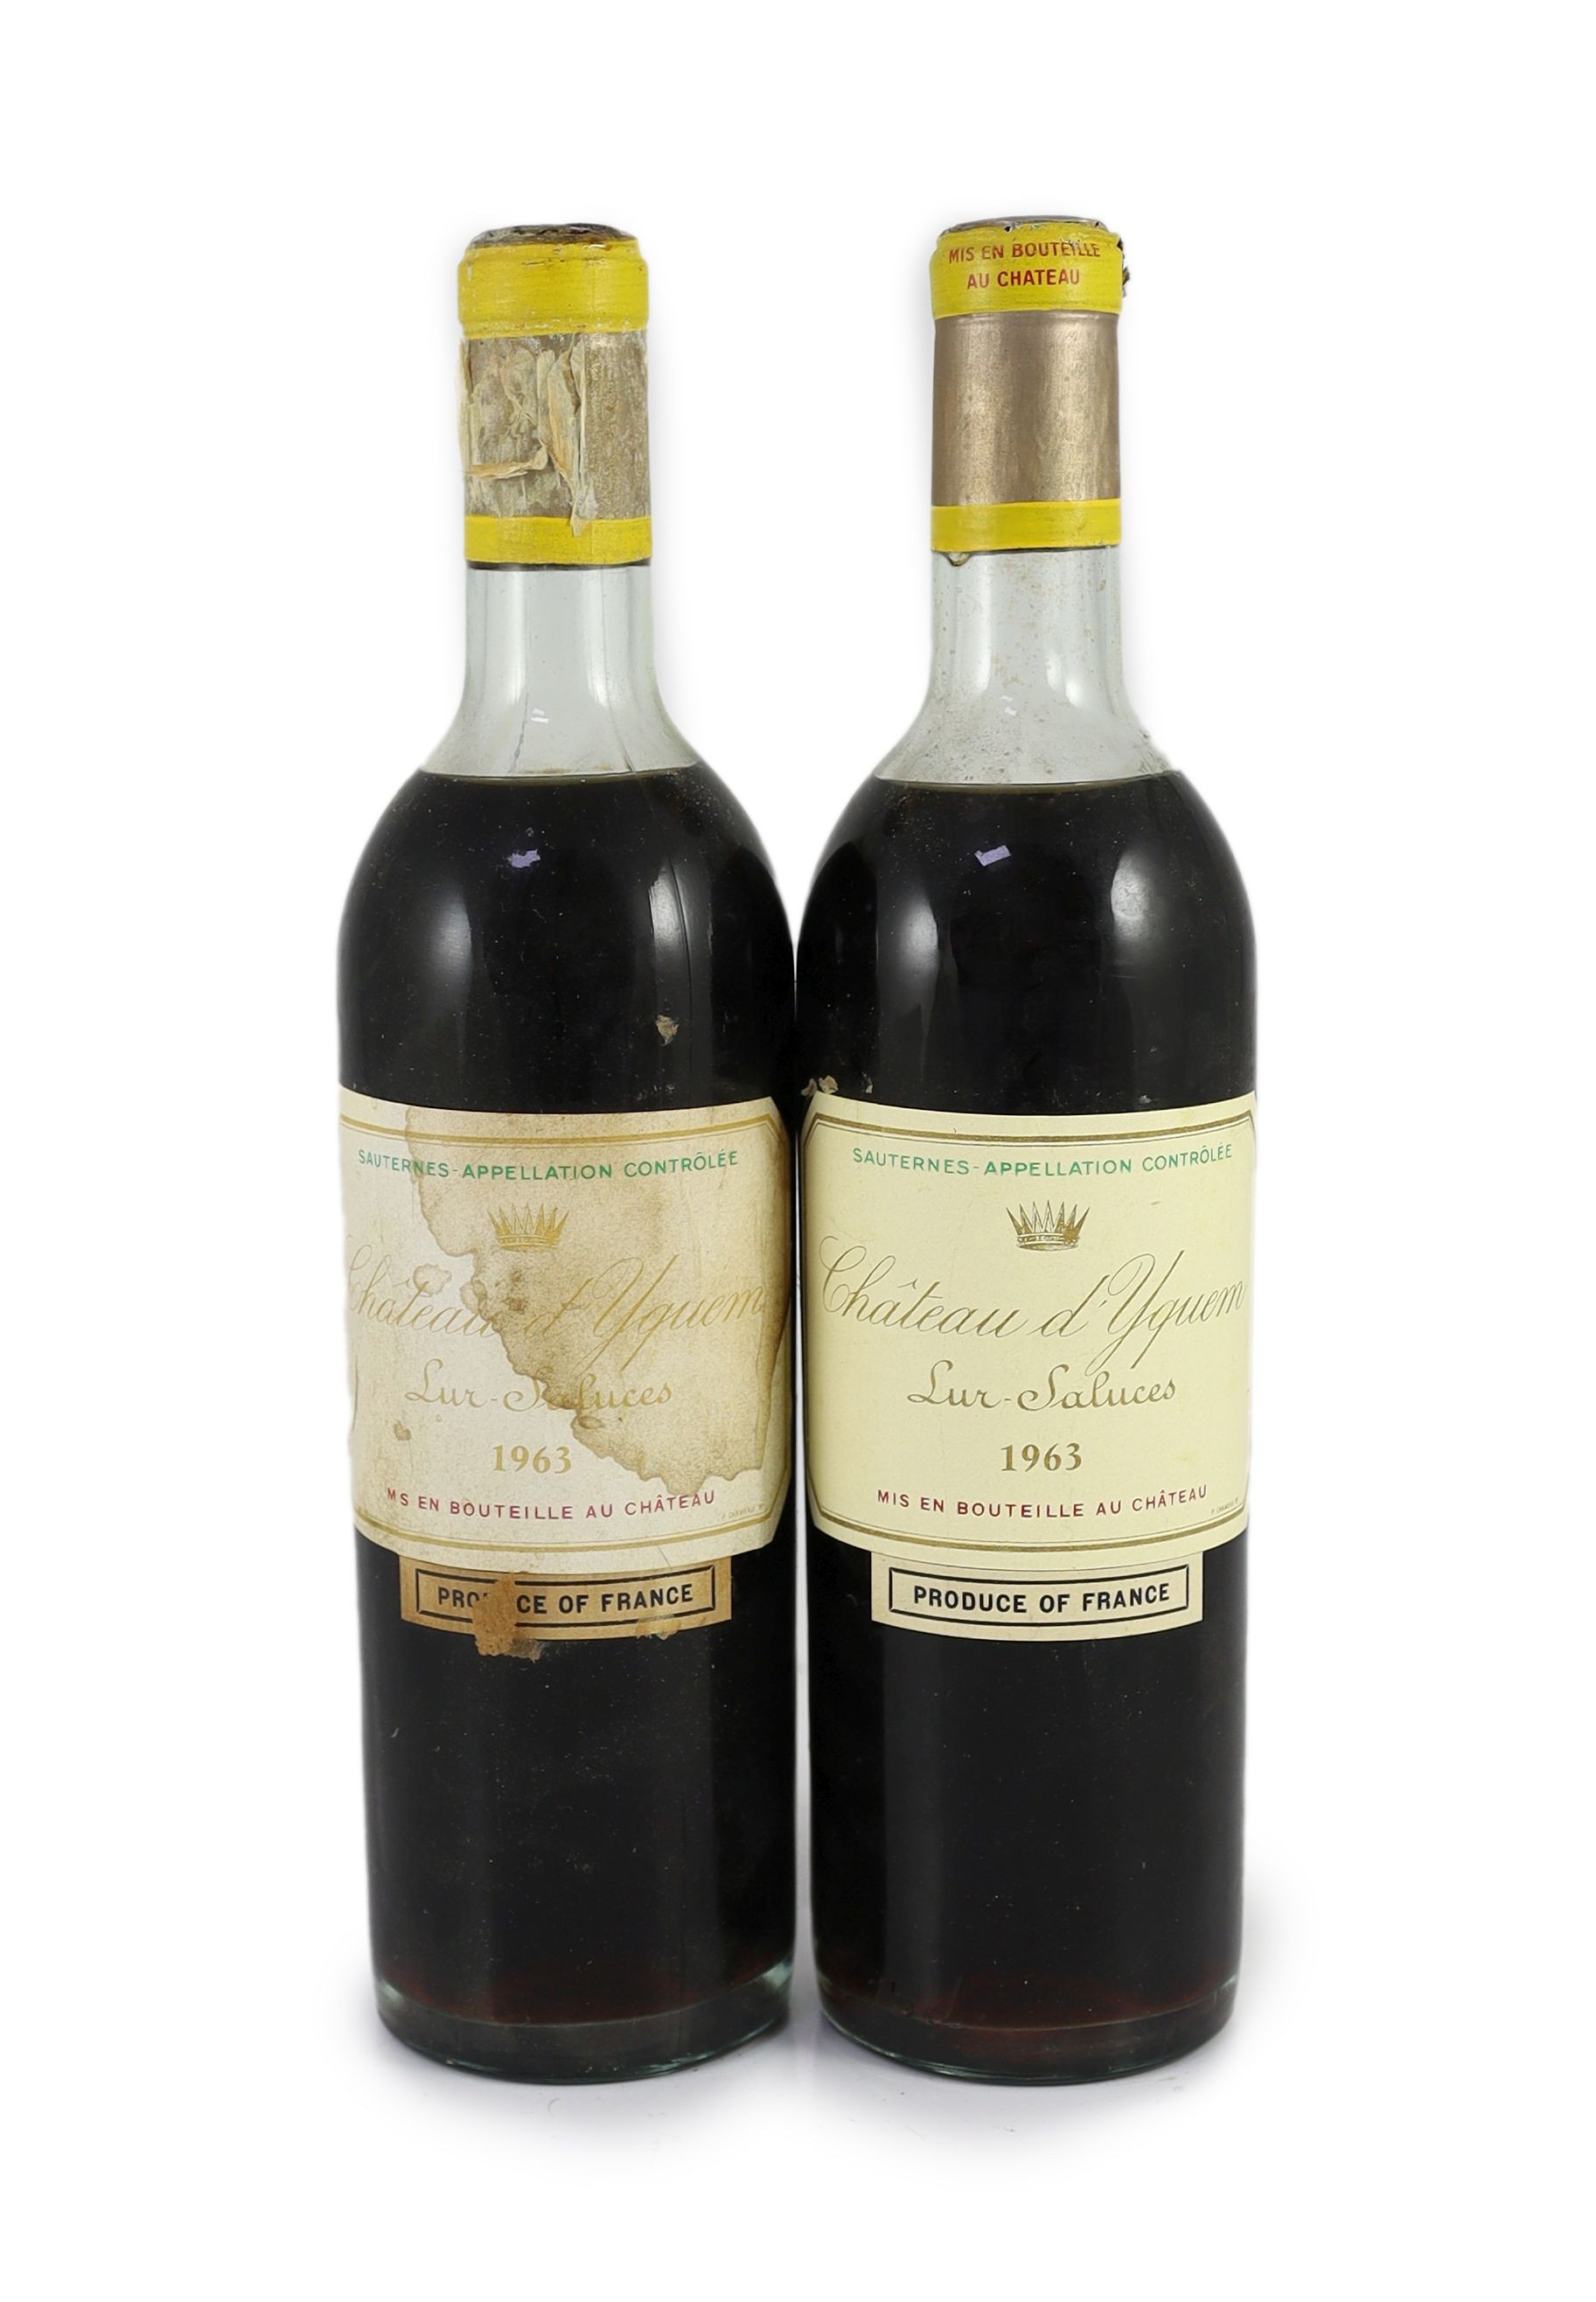 Two bottles of Chateau d'Yquem Lur-Saluces 1963                                                                                                                                                                             